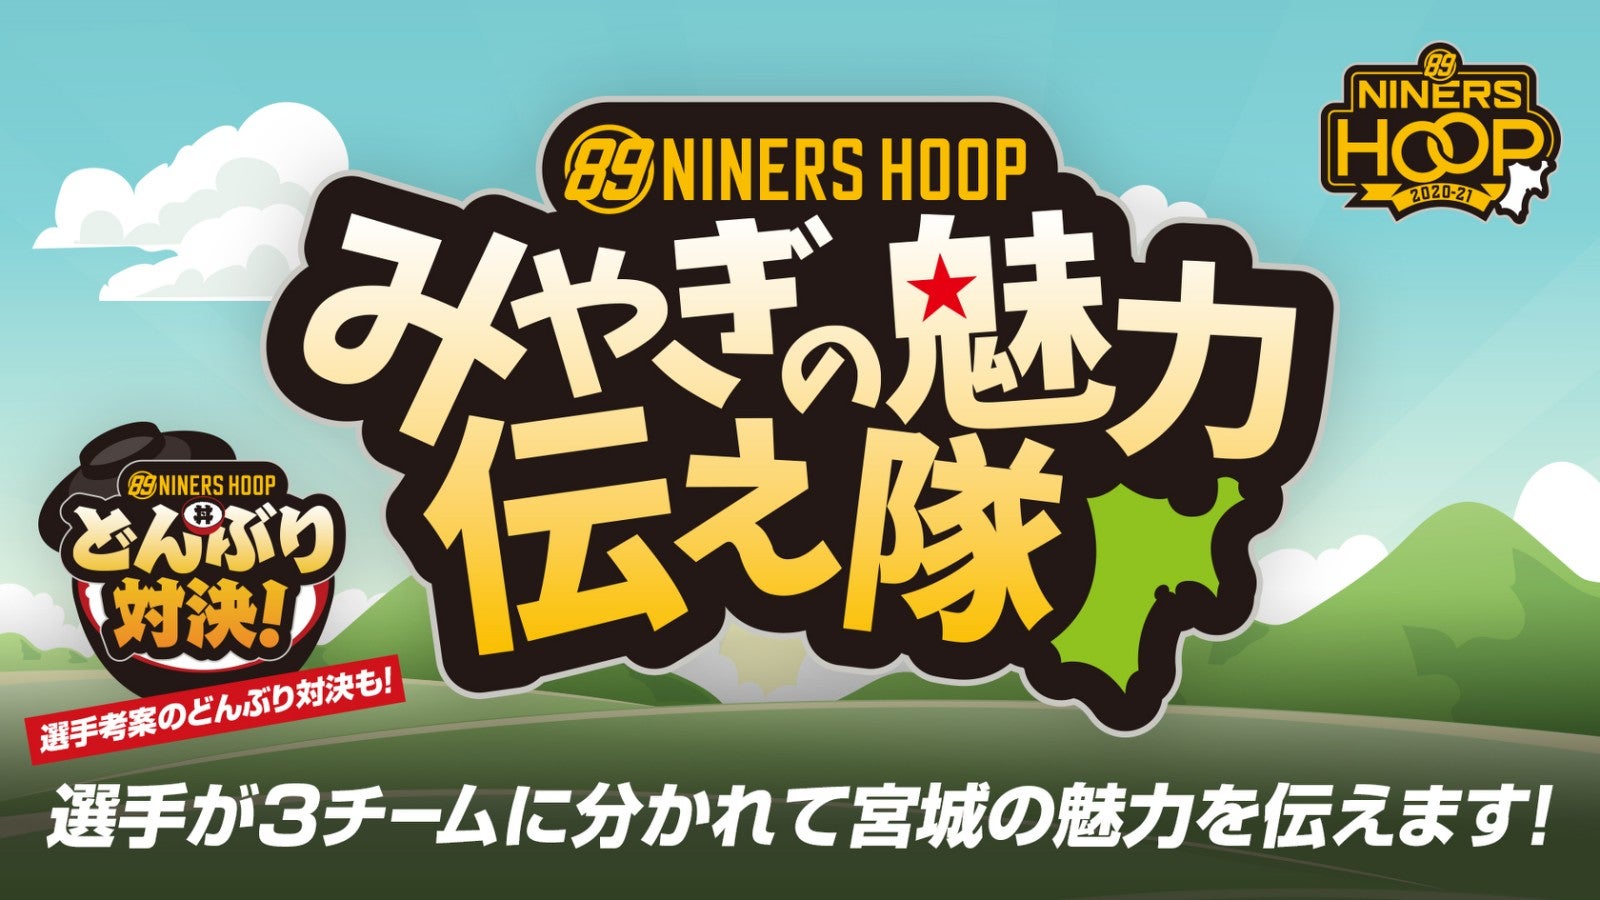 9 7 月 情報更新 Niners Hoop みやぎの魅力伝え隊 選手考案の どんぶり対決 も 仙台ers